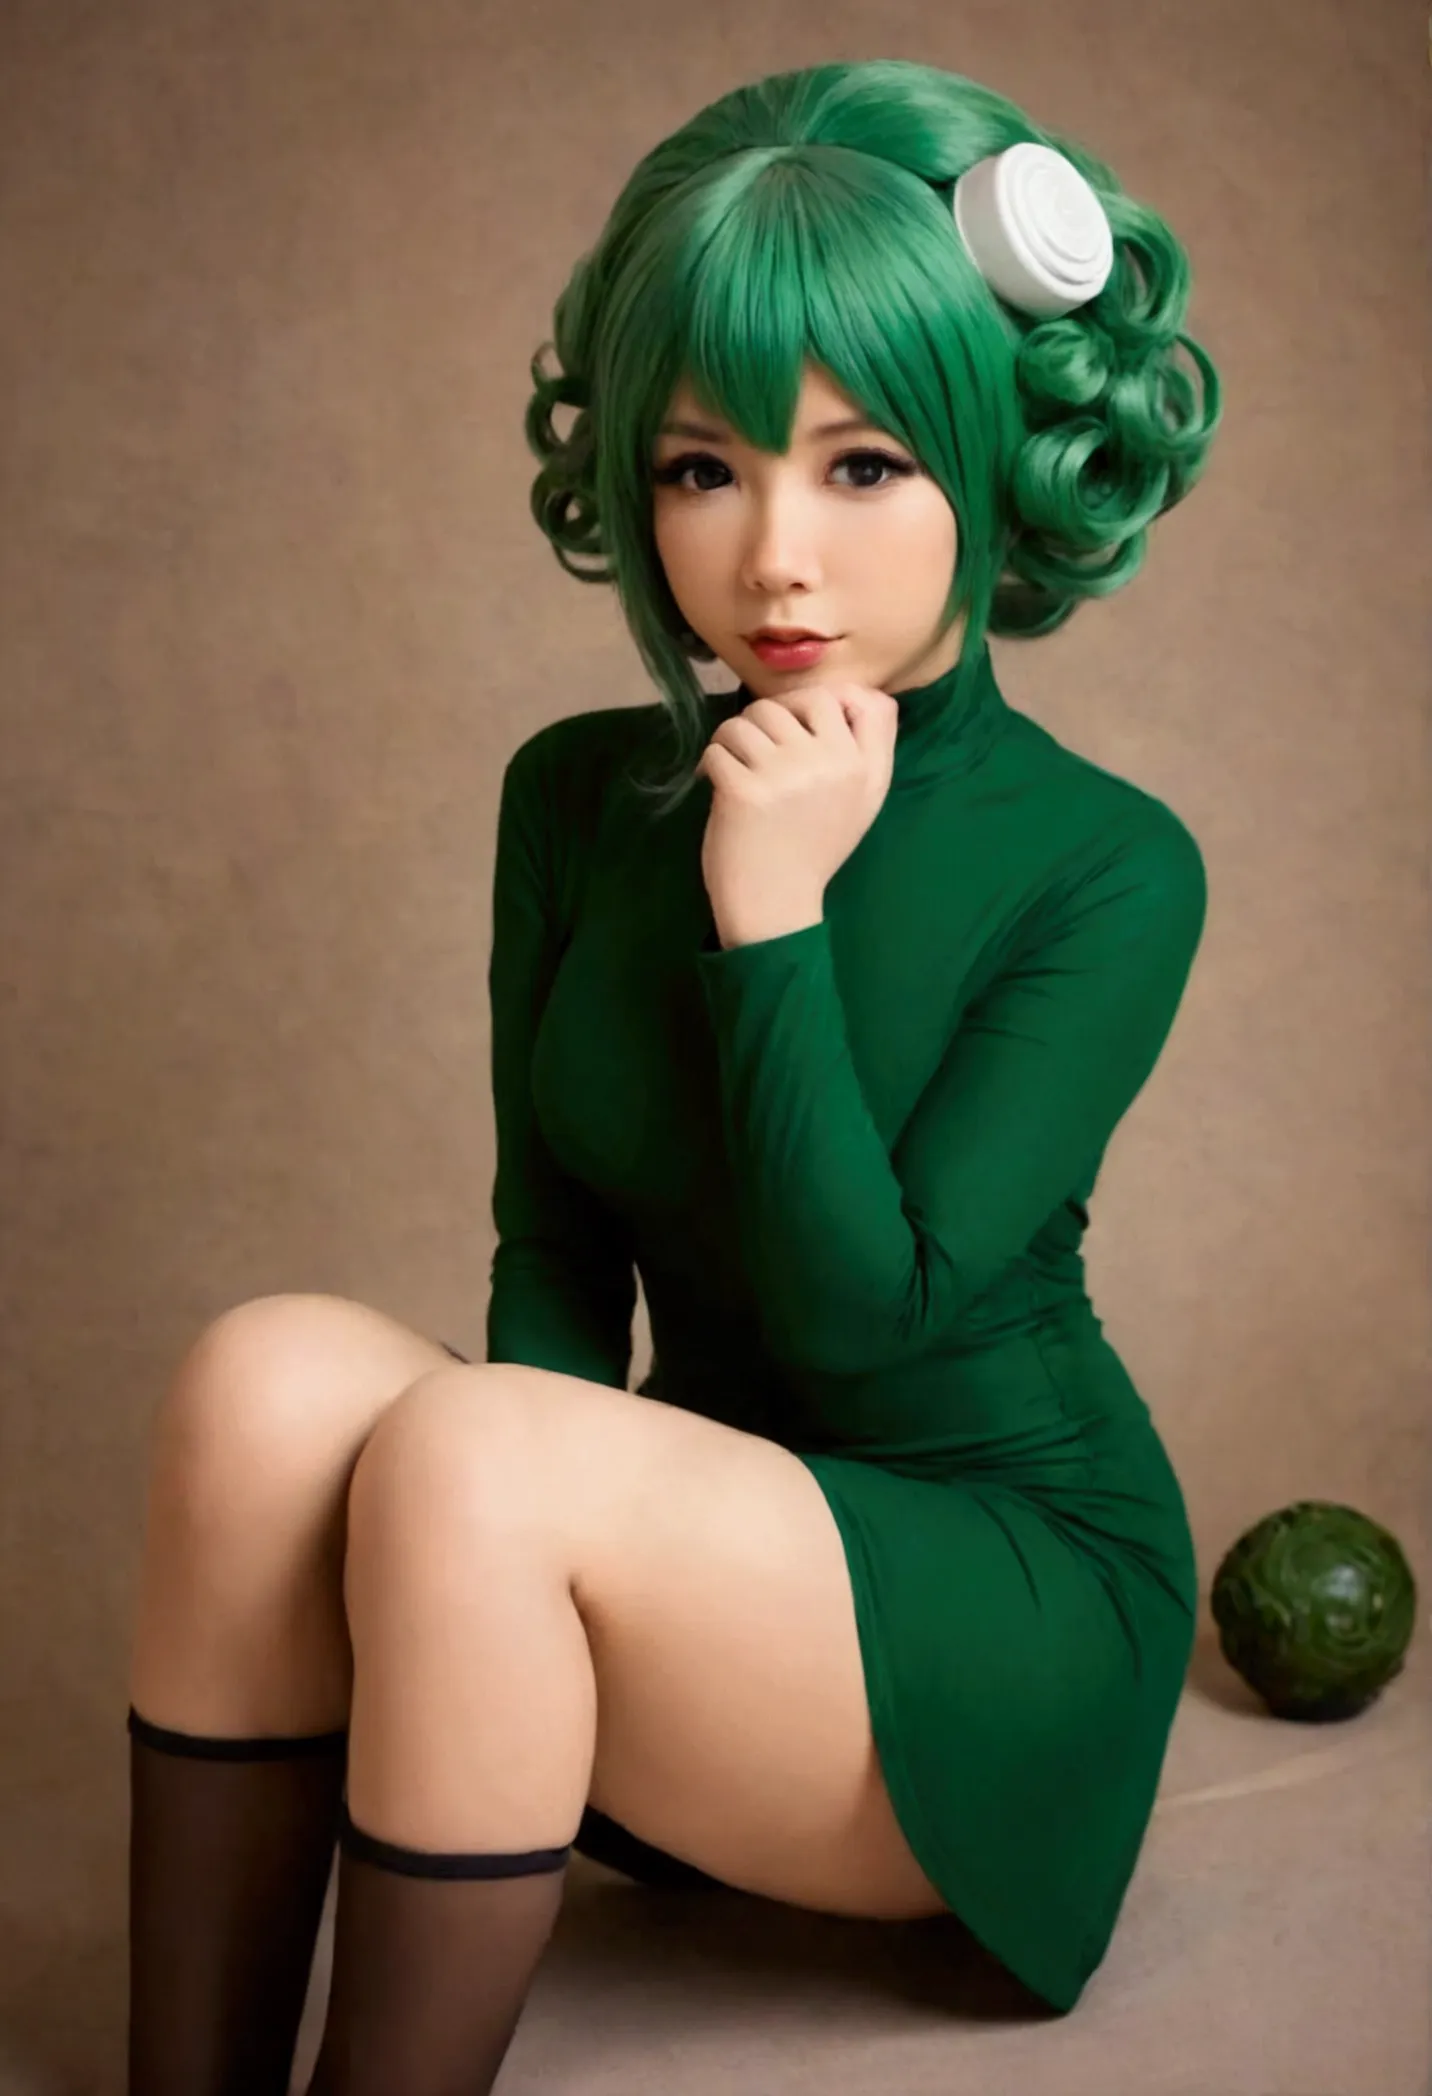 A cute woman in sexy cosplay as Tatsumaki